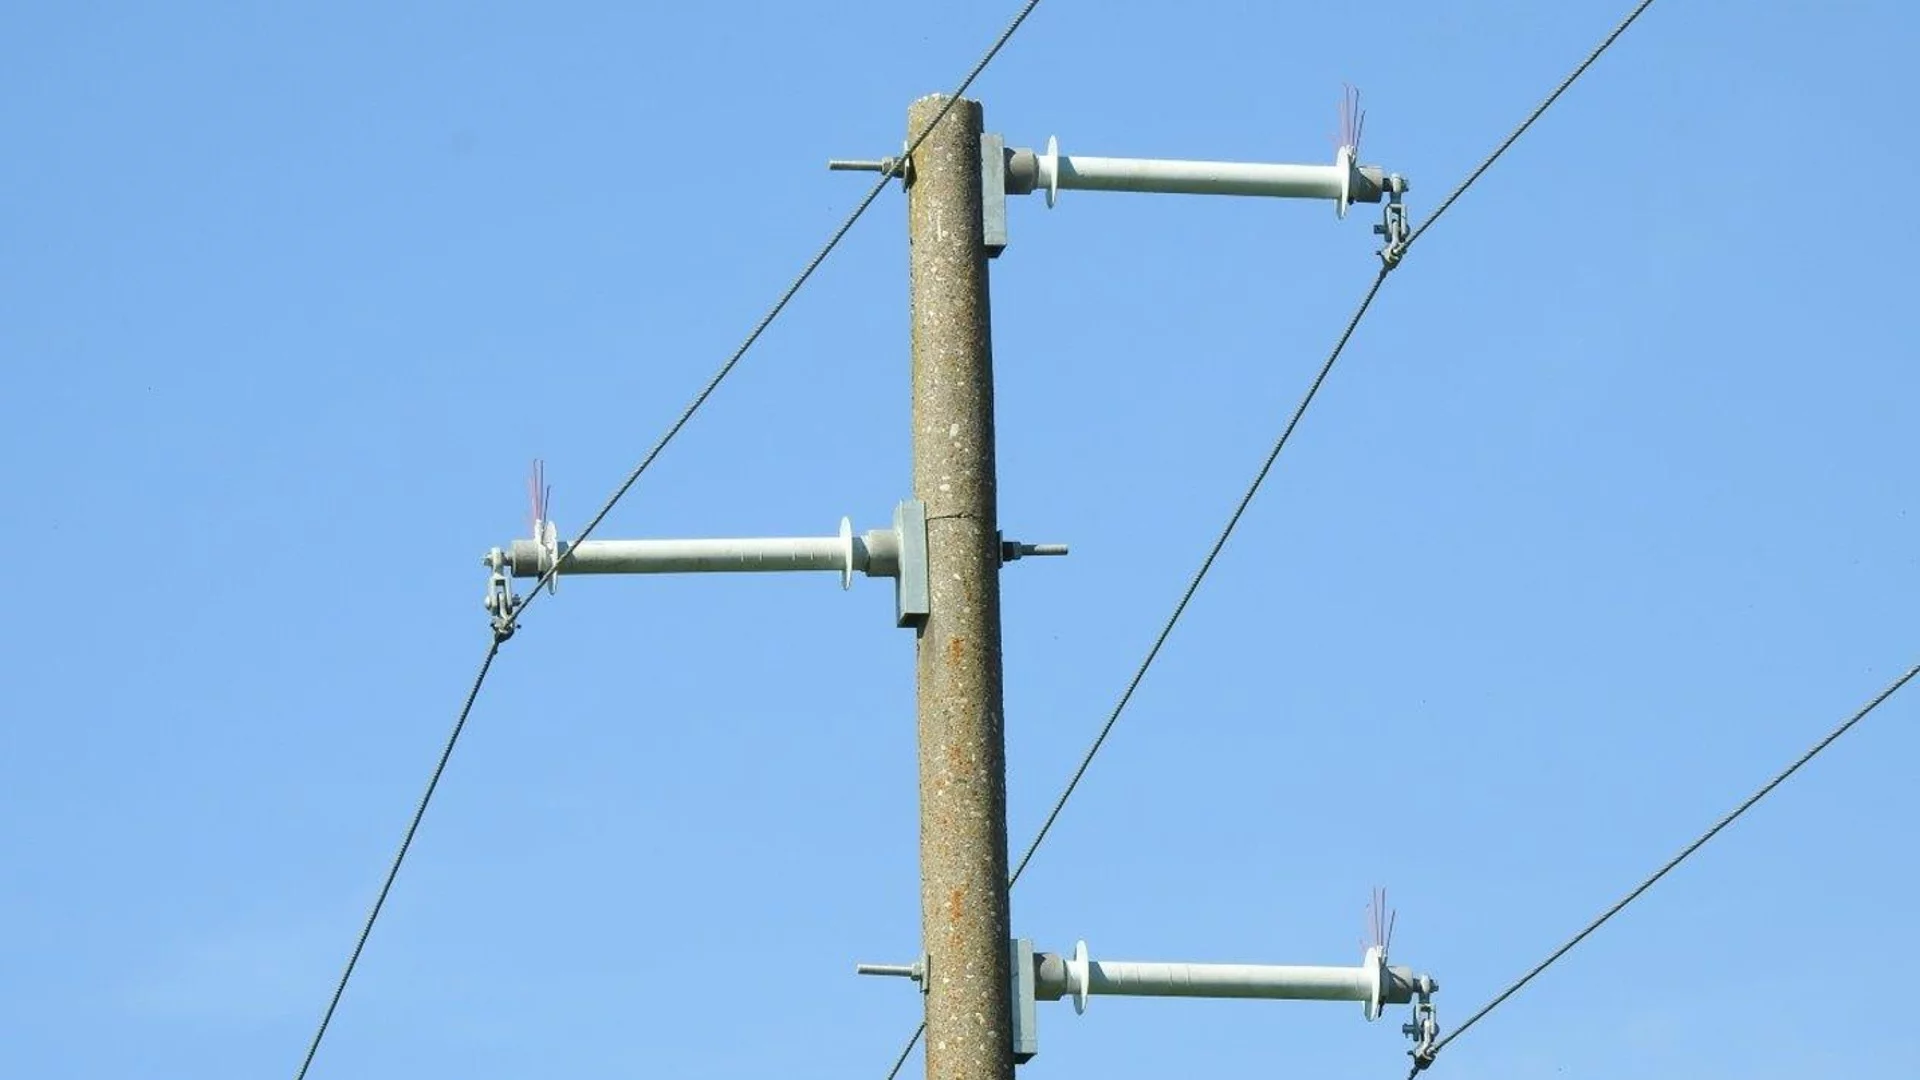 Скъсани кабели при изкопни работи прекъснаха електрозахранването на части от кварталите Левски и Враждебна